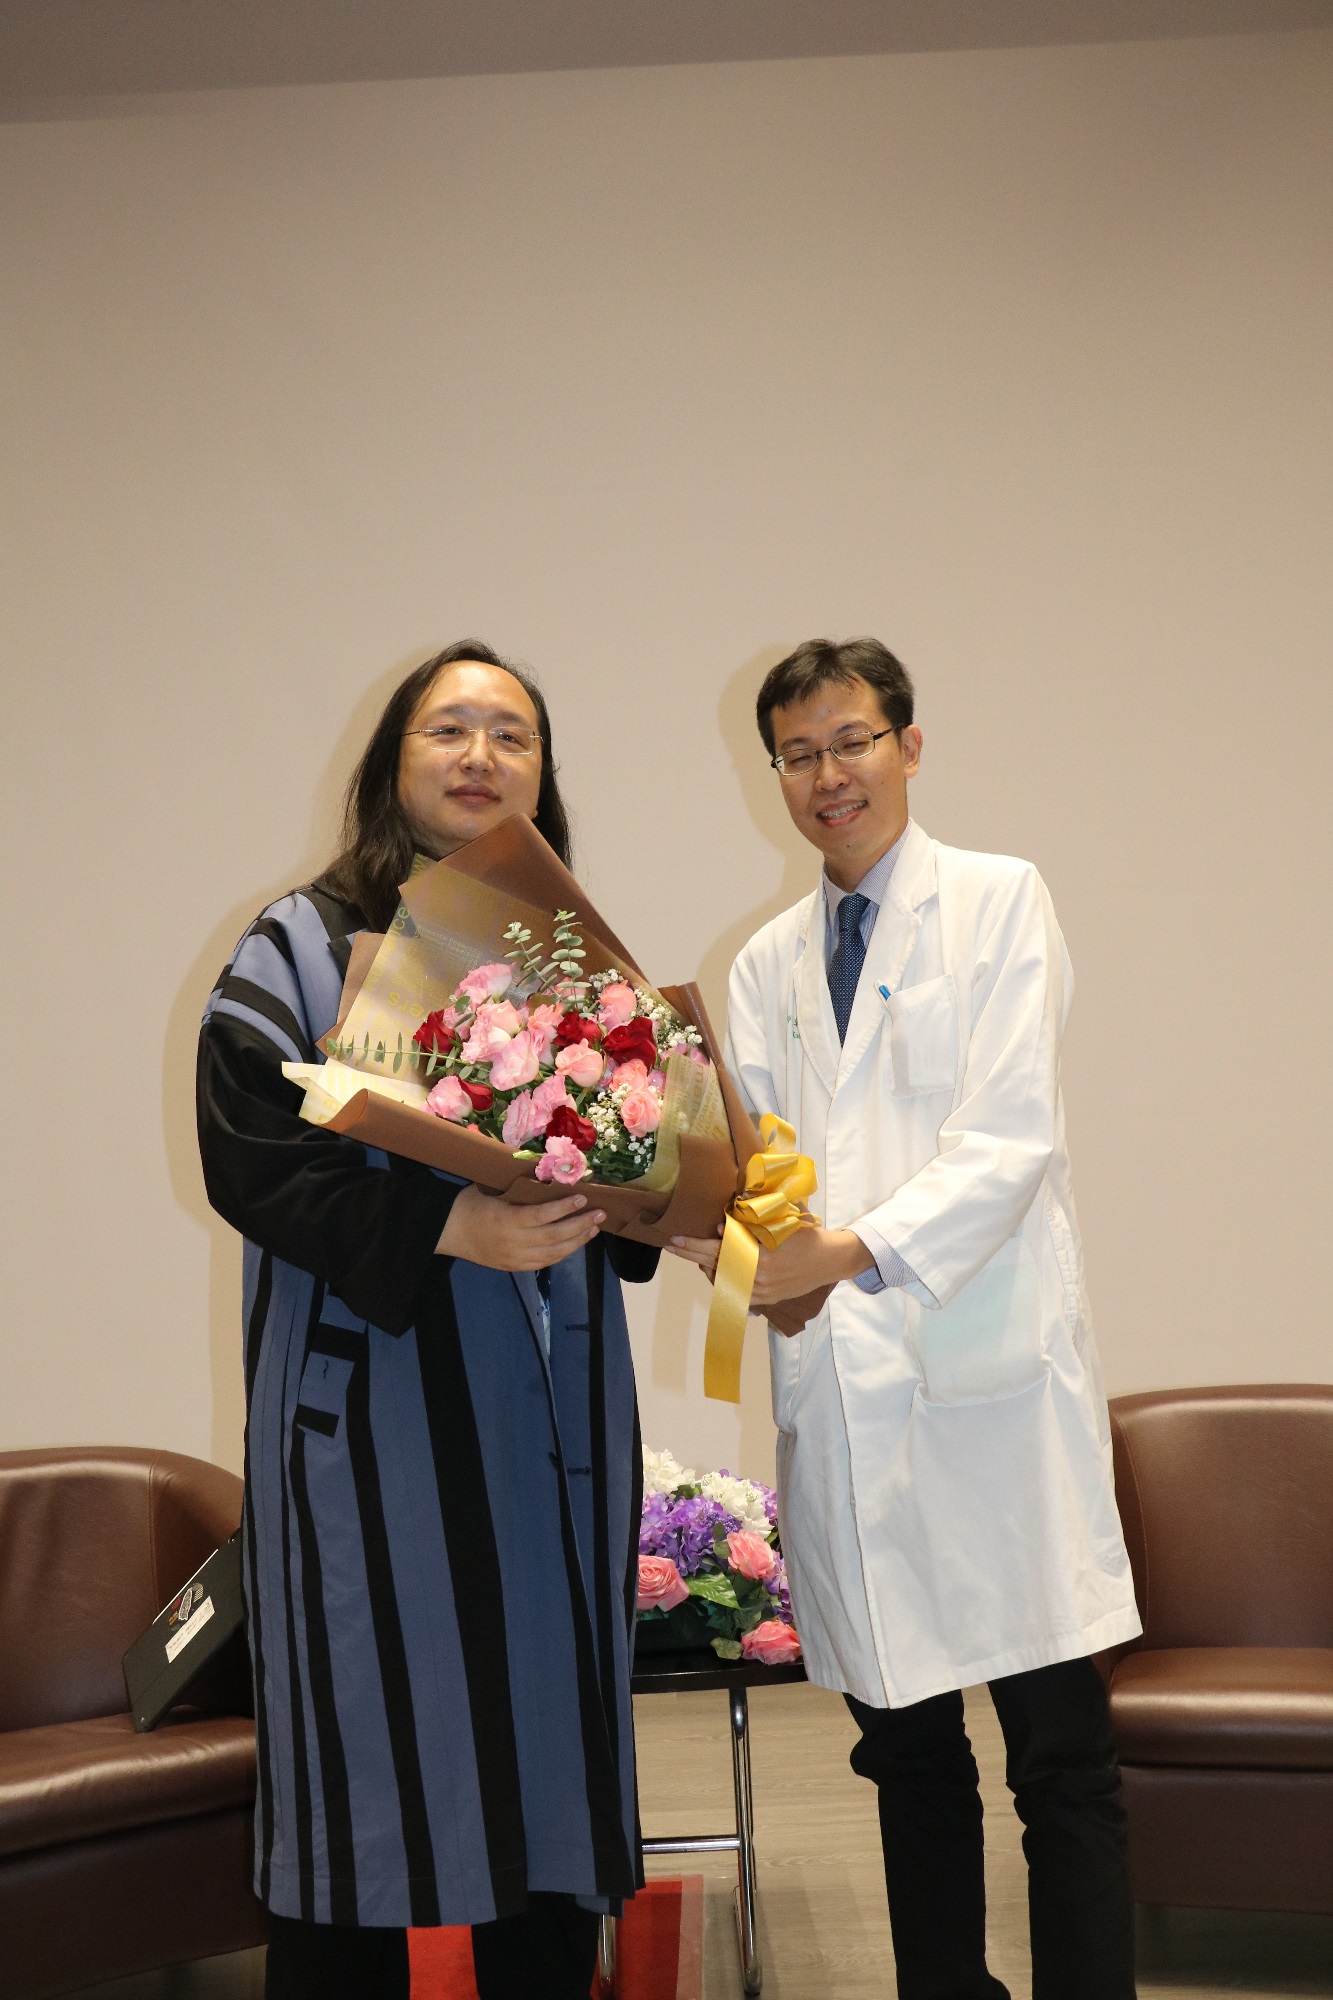 
	郭錦輯醫師贈送花束感謝。
